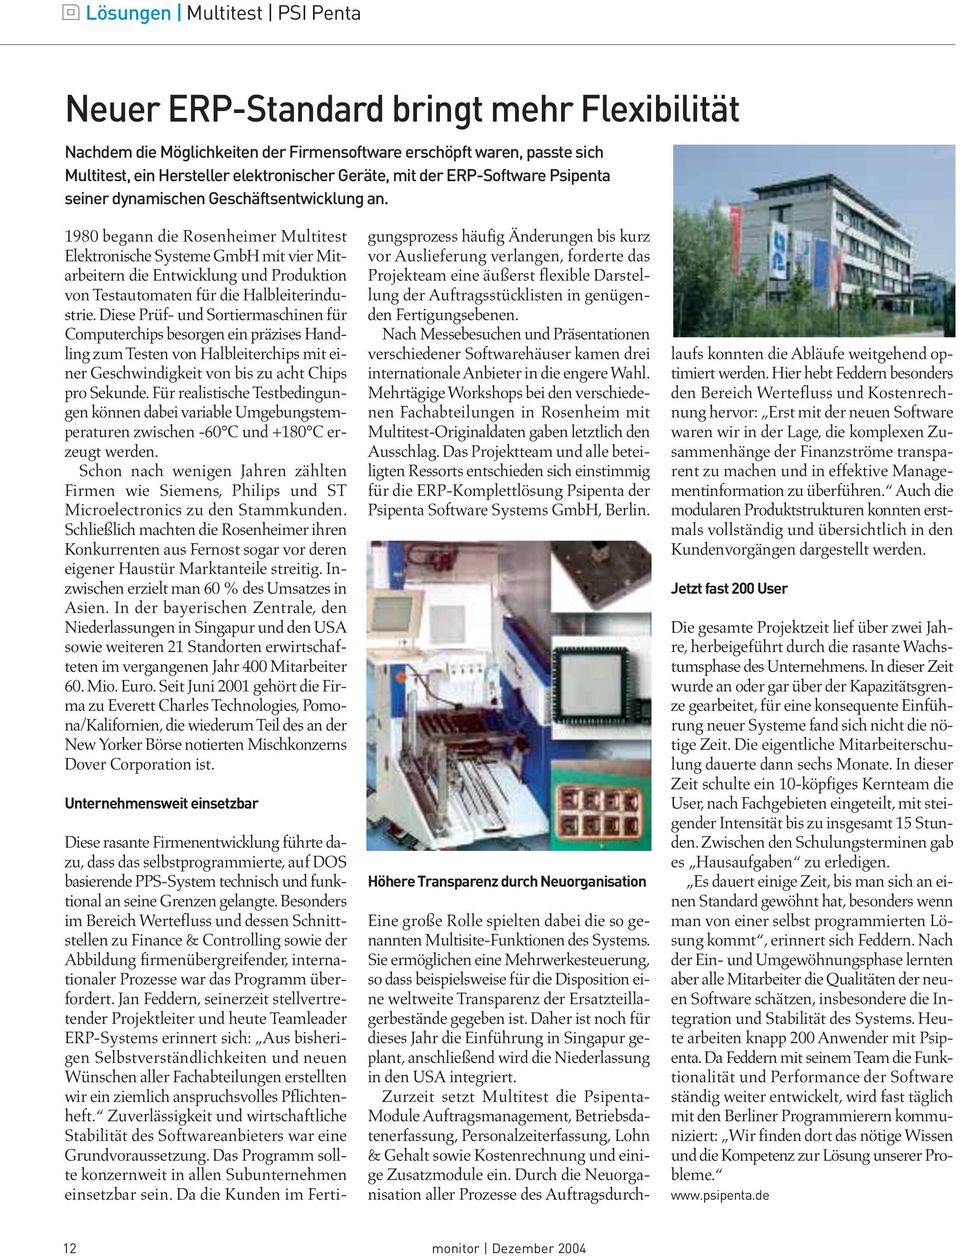 1980 begann die Rosenheimer Multitest Elektronische Systeme GmbH mit vier Mitarbeitern die Entwicklung und Produktion von Testautomaten für die Halbleiterindustrie.